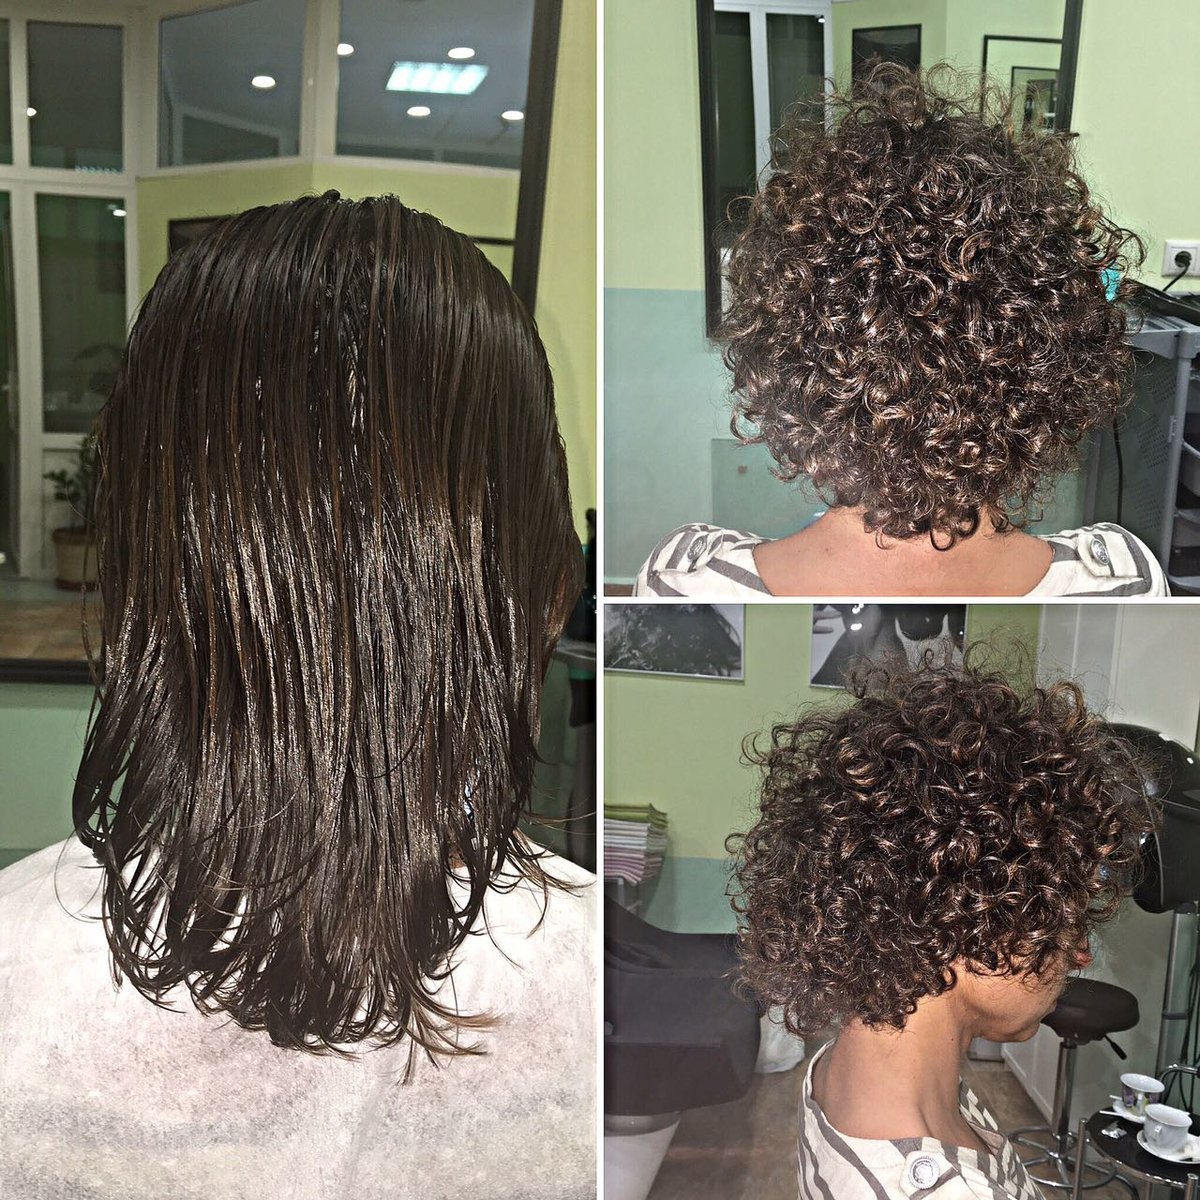 Виды биозавивки волос на средние волосы фото до и после